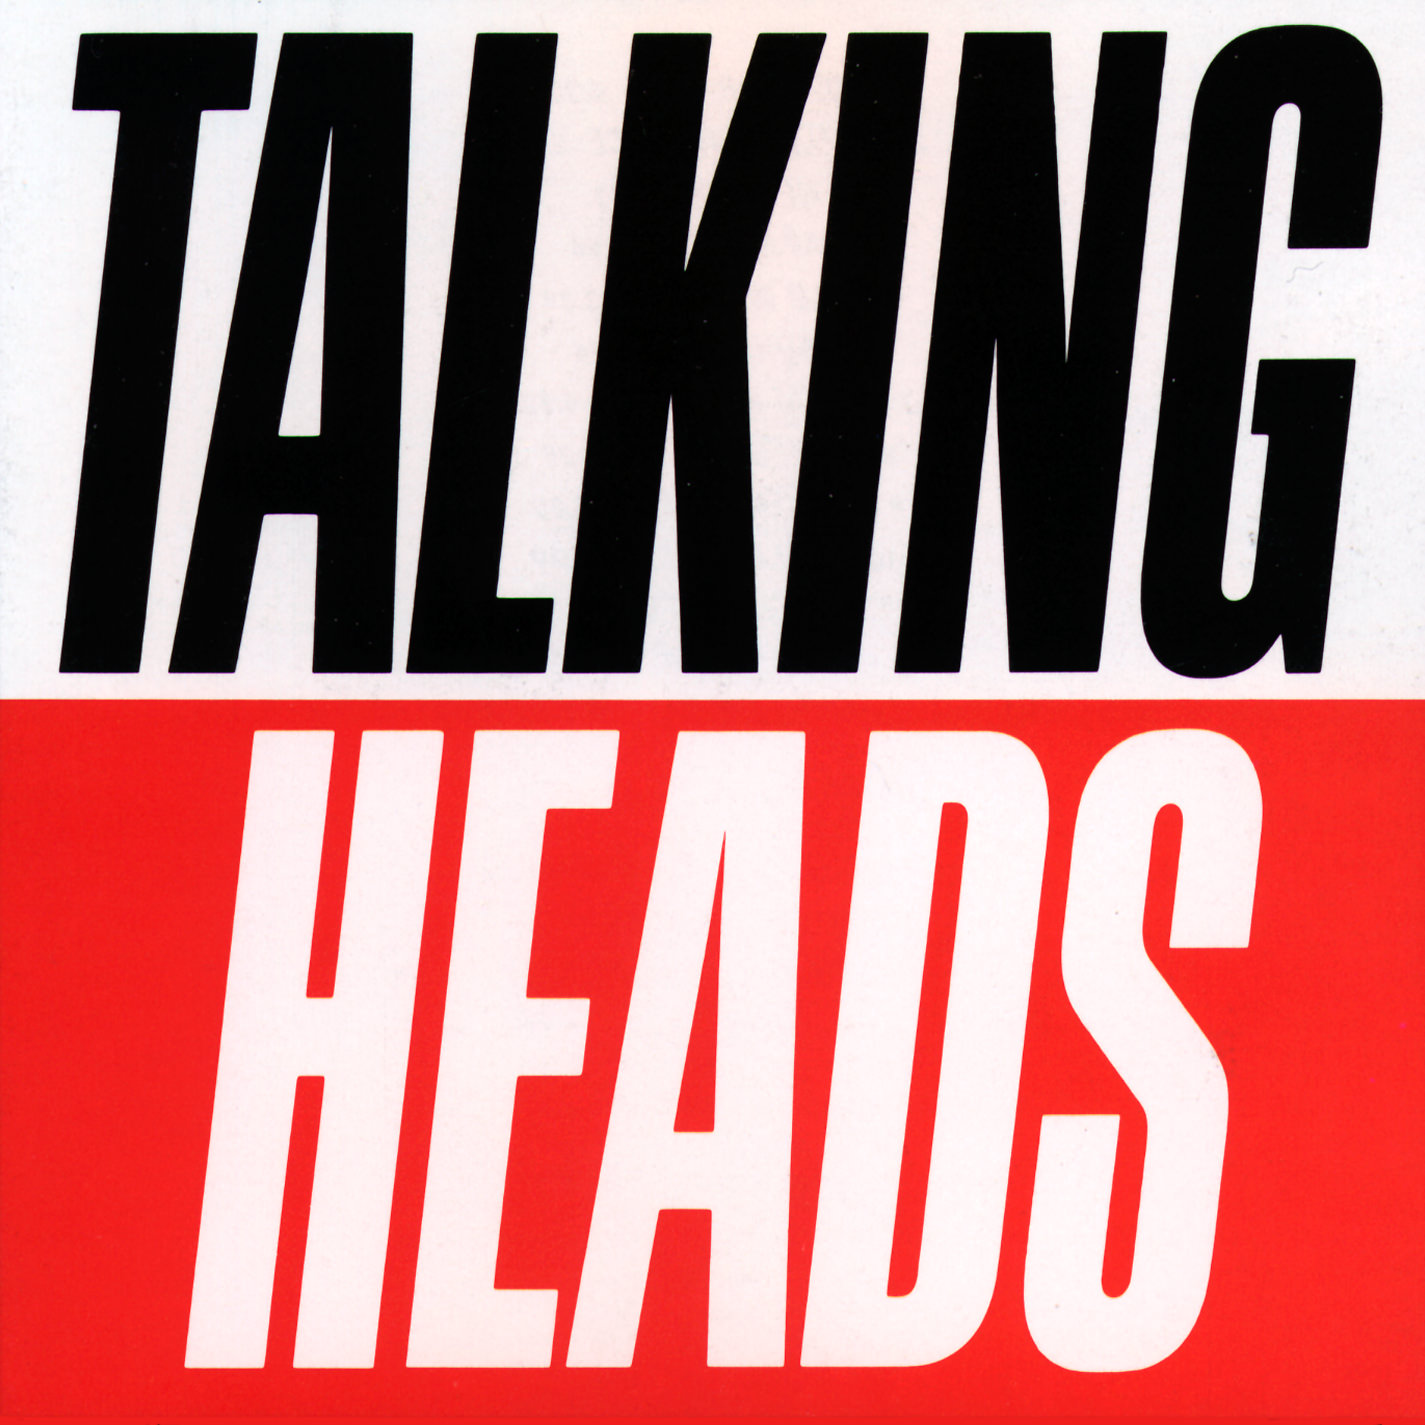 Talking Heads – True Stories (1986/2011) [HDTracks FLAC 24bit/96kHz]